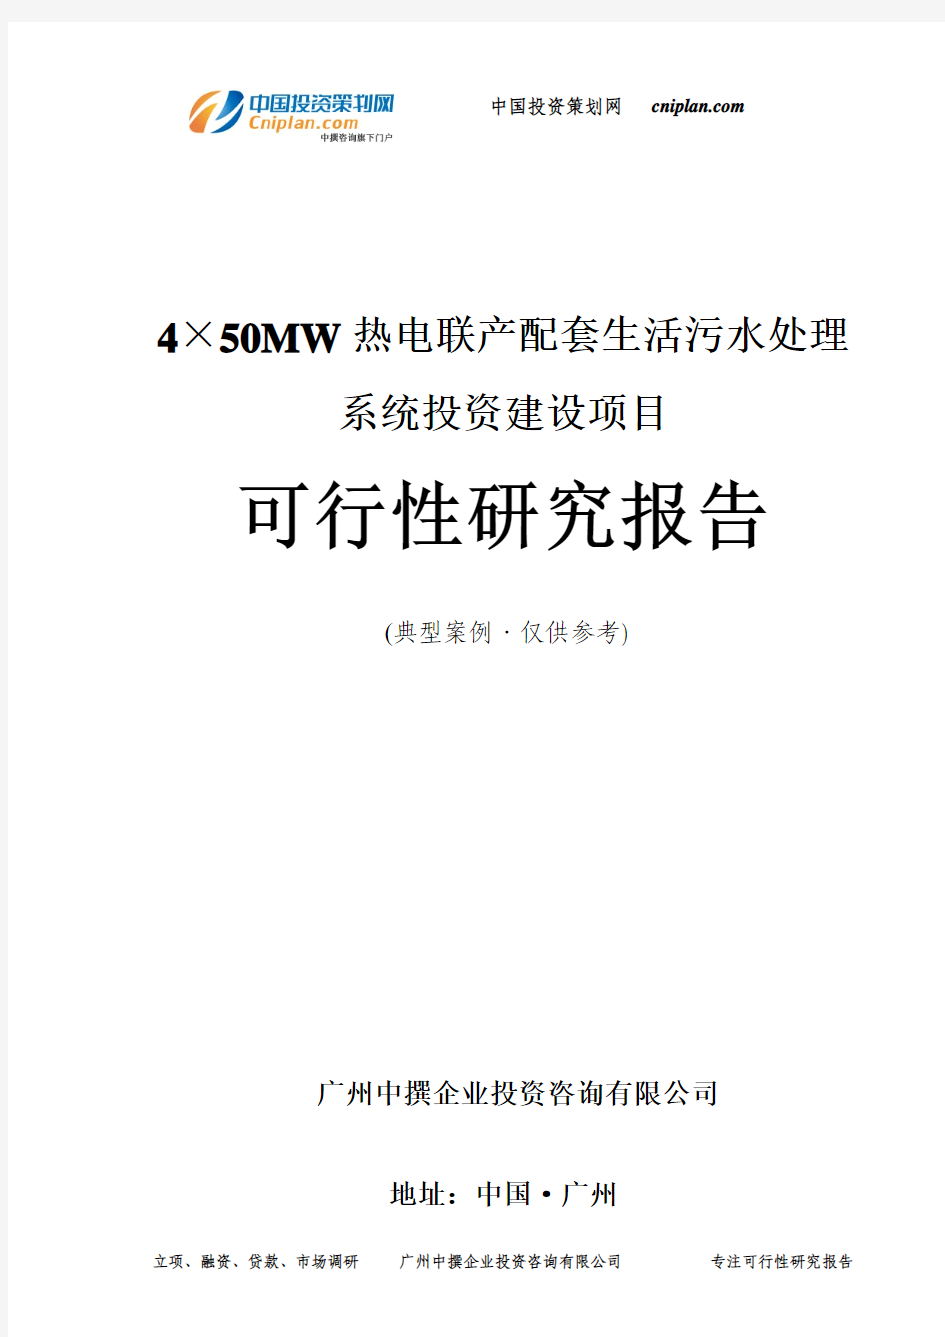 4×50MW热电联产配套生活污水处理系统投资建设项目可行性研究报告-广州中撰咨询